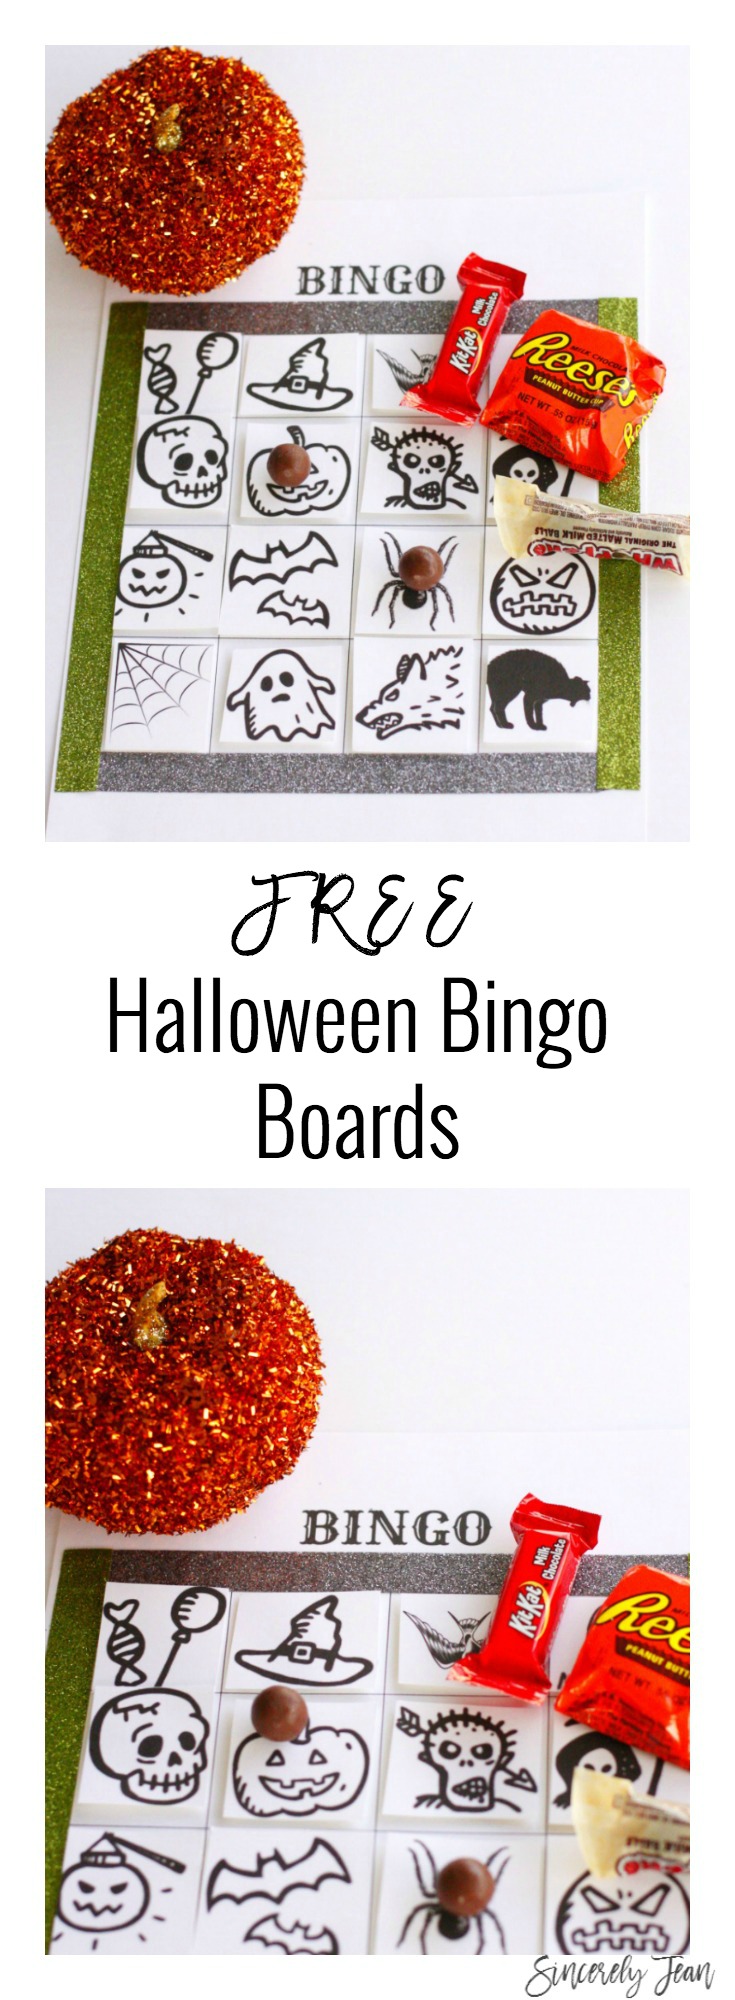 Halloween bingo board, free downloads by SincerelyJean.com